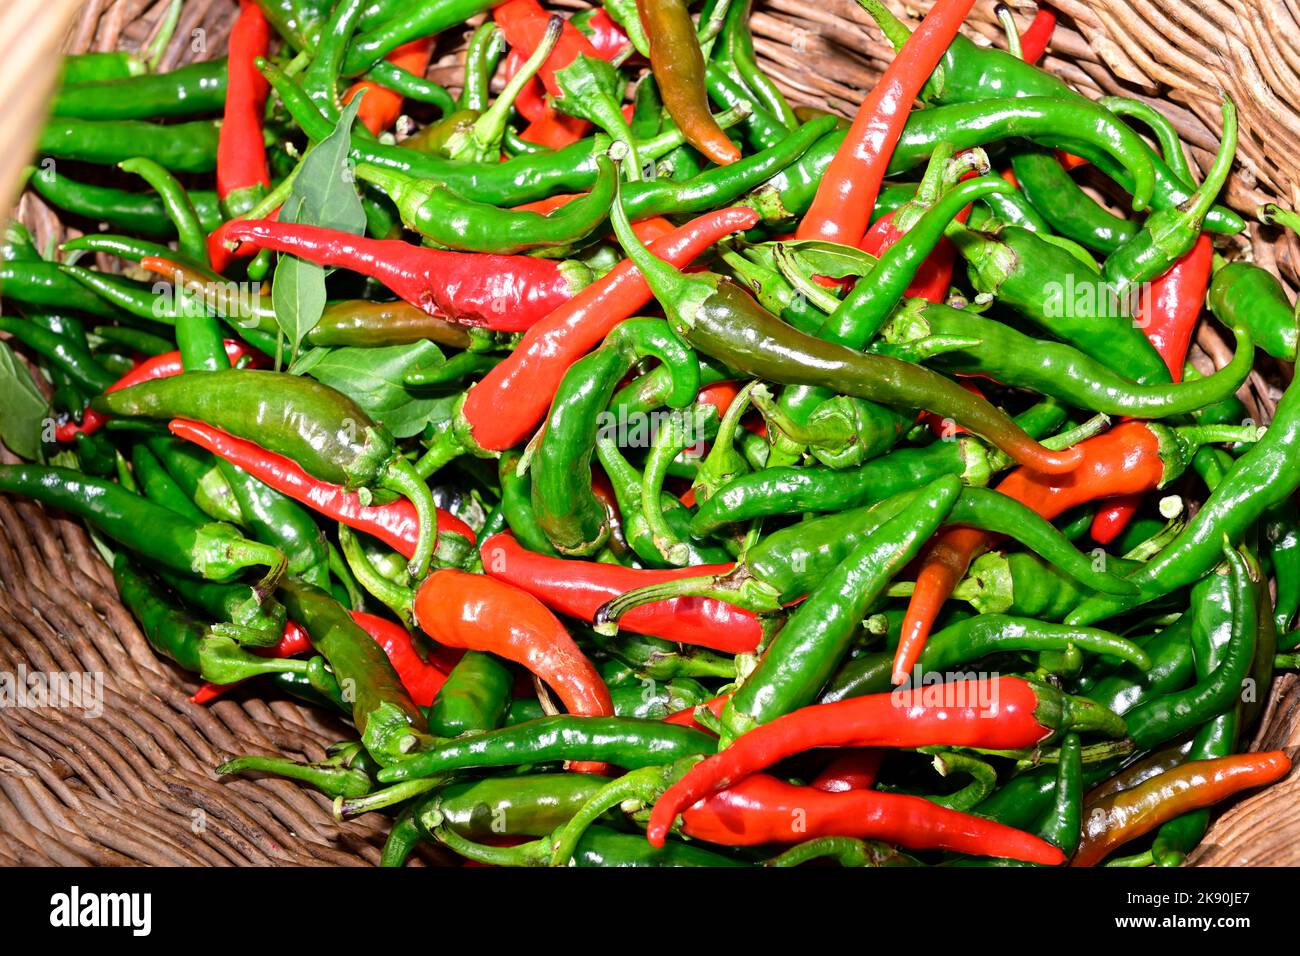 Los chiles rojos y verdes frescos se cultivan en el jardín y en una cesta de mimbre Foto de stock